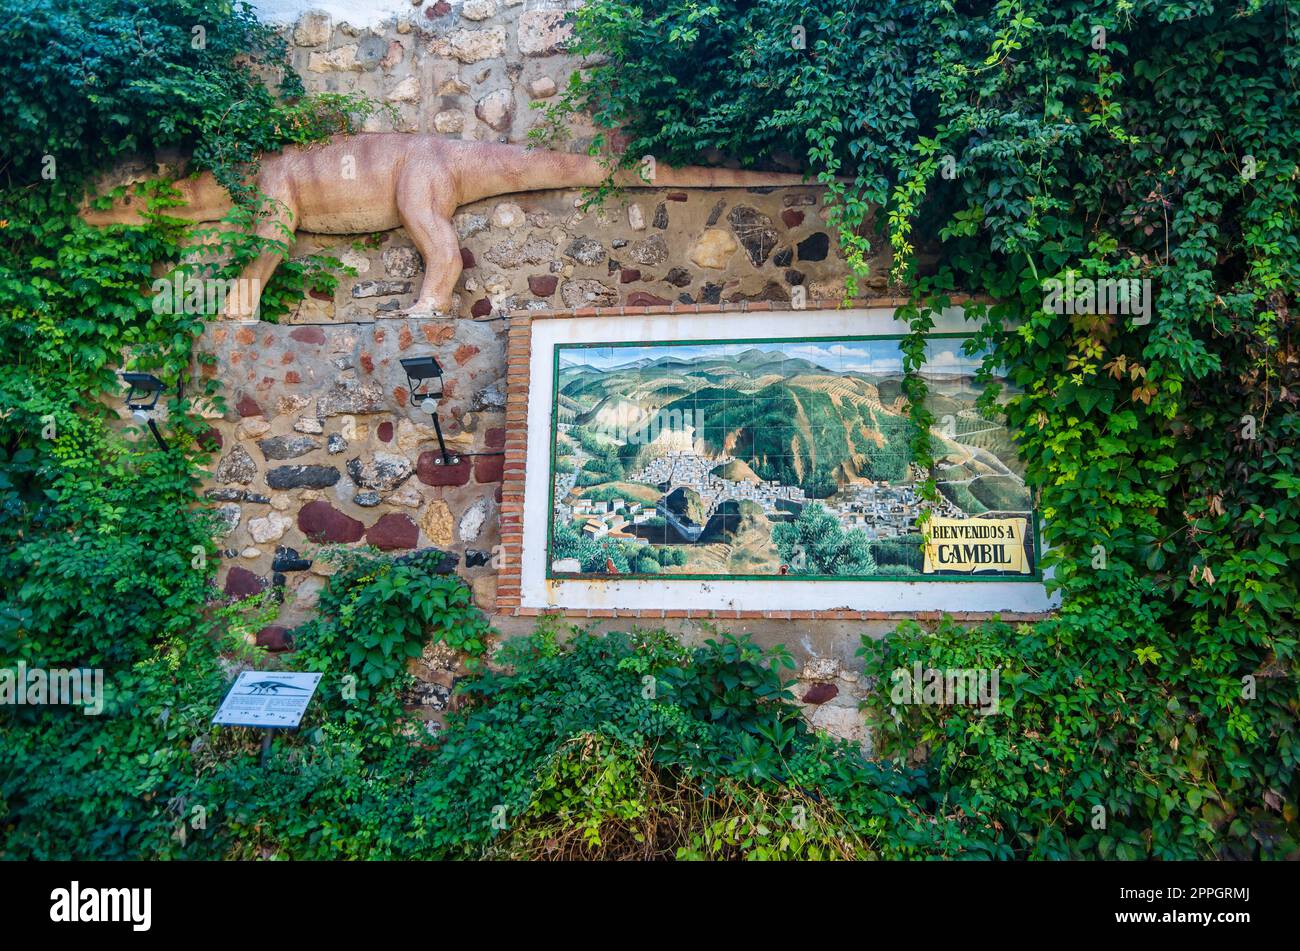 CAMBIL, SPANIEN - 14. OKTOBER 2021: Steinmauer in Cambil, Andalusien, Spanien, mit einem Mosaik aus Fliesen mit Blick auf die Stadt darüber gibt es eine Nachbildung eines Reptils der Brachychirotherium-Art, die vor etwa 225 Millionen Jahren entstanden ist Stockfoto